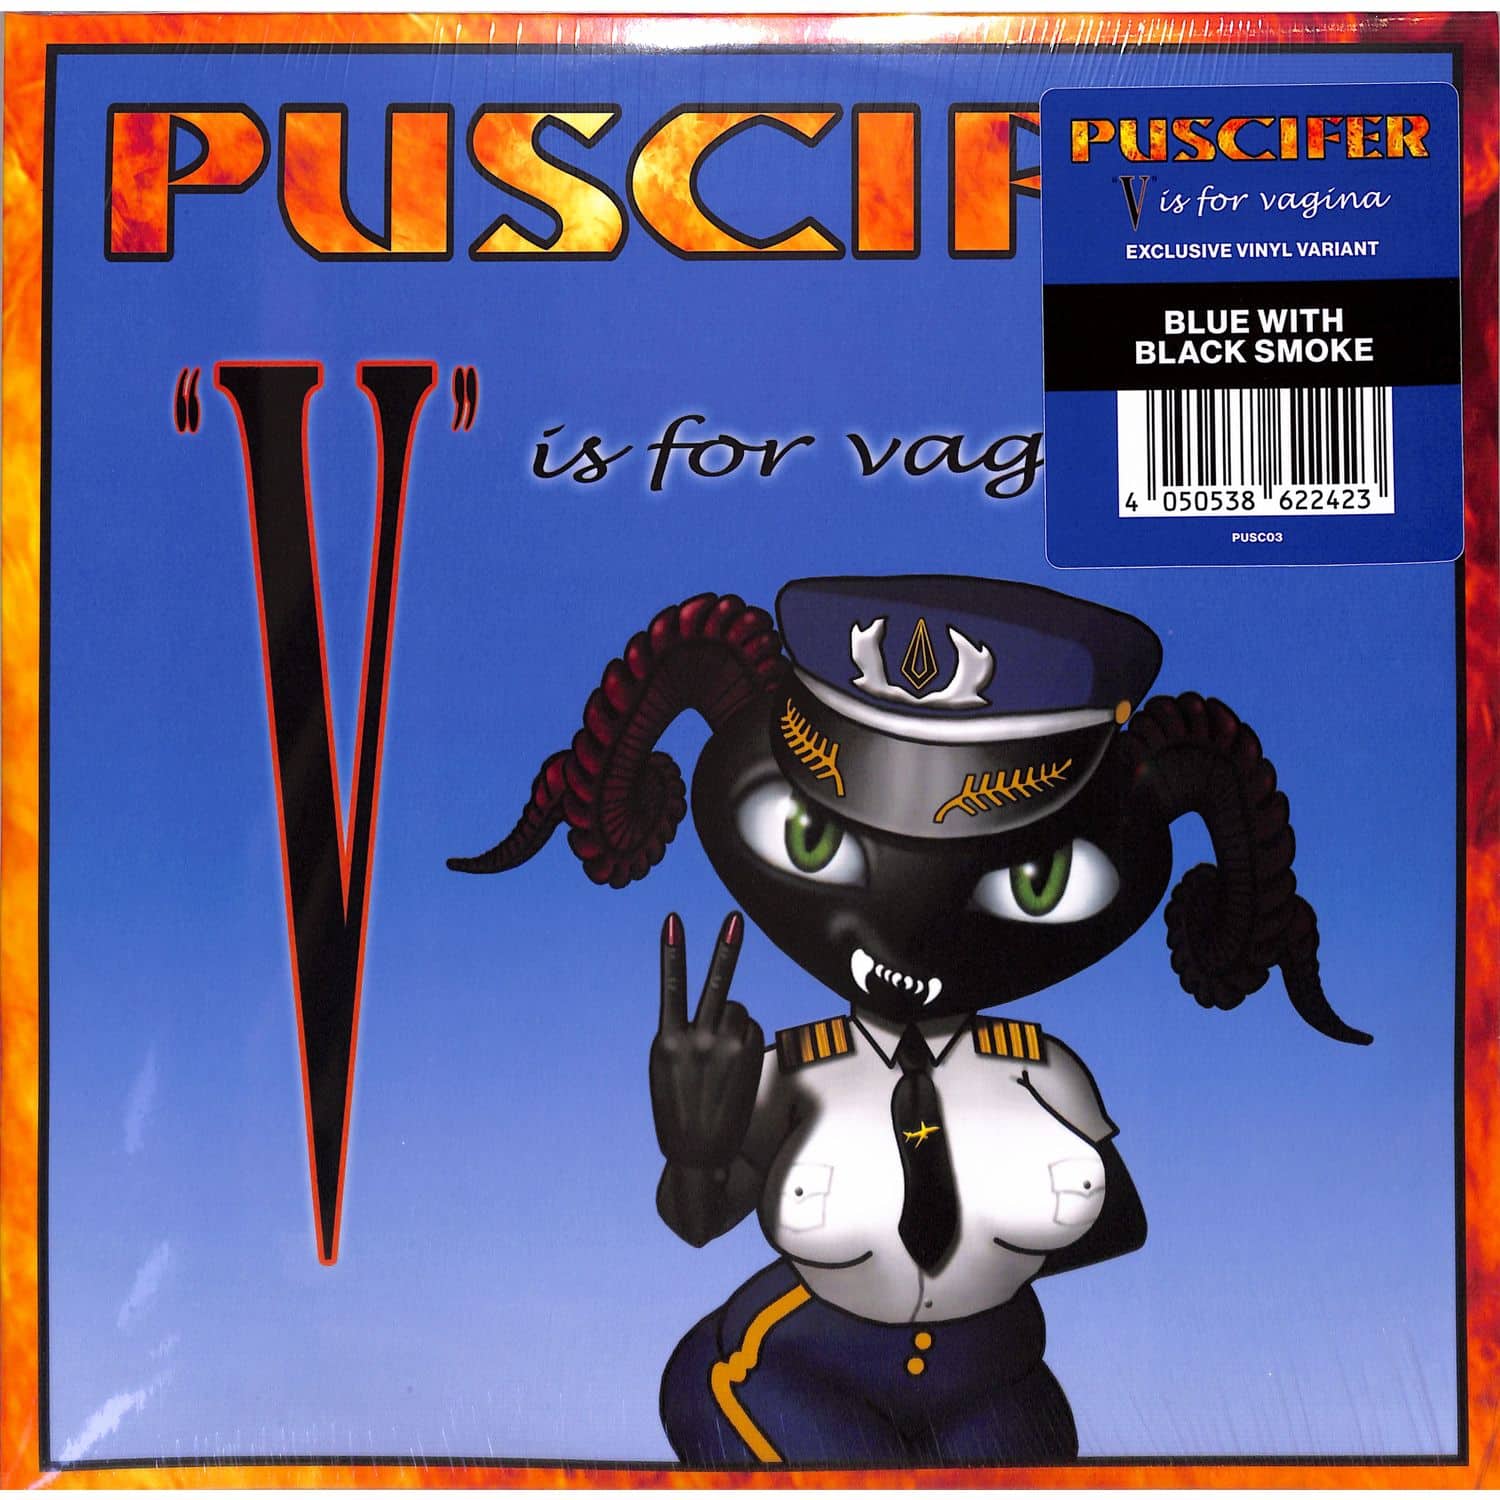 Puscifer - V IS FOR VAGINA 